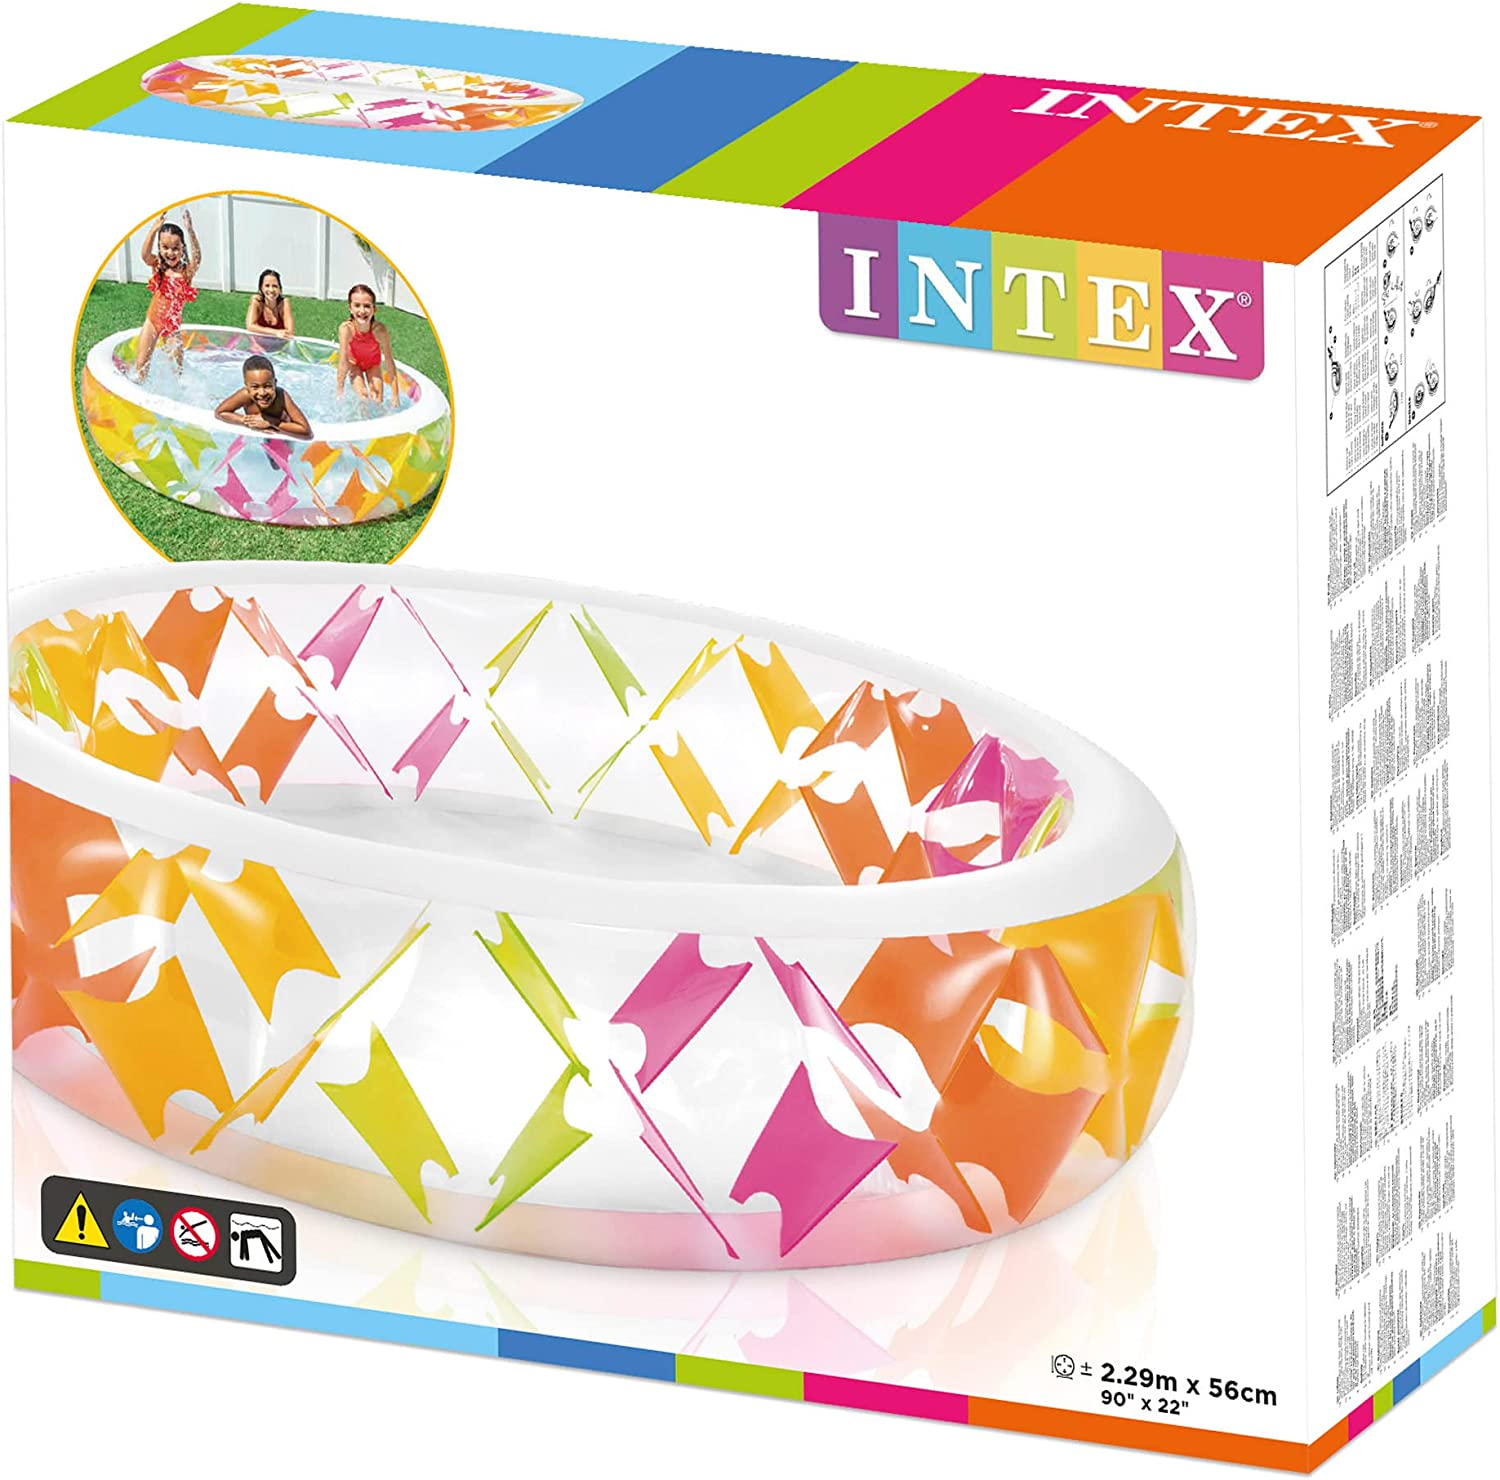 INTEX Pinwheel Planschbecken, mehrfarbig bunt, 229x56cm